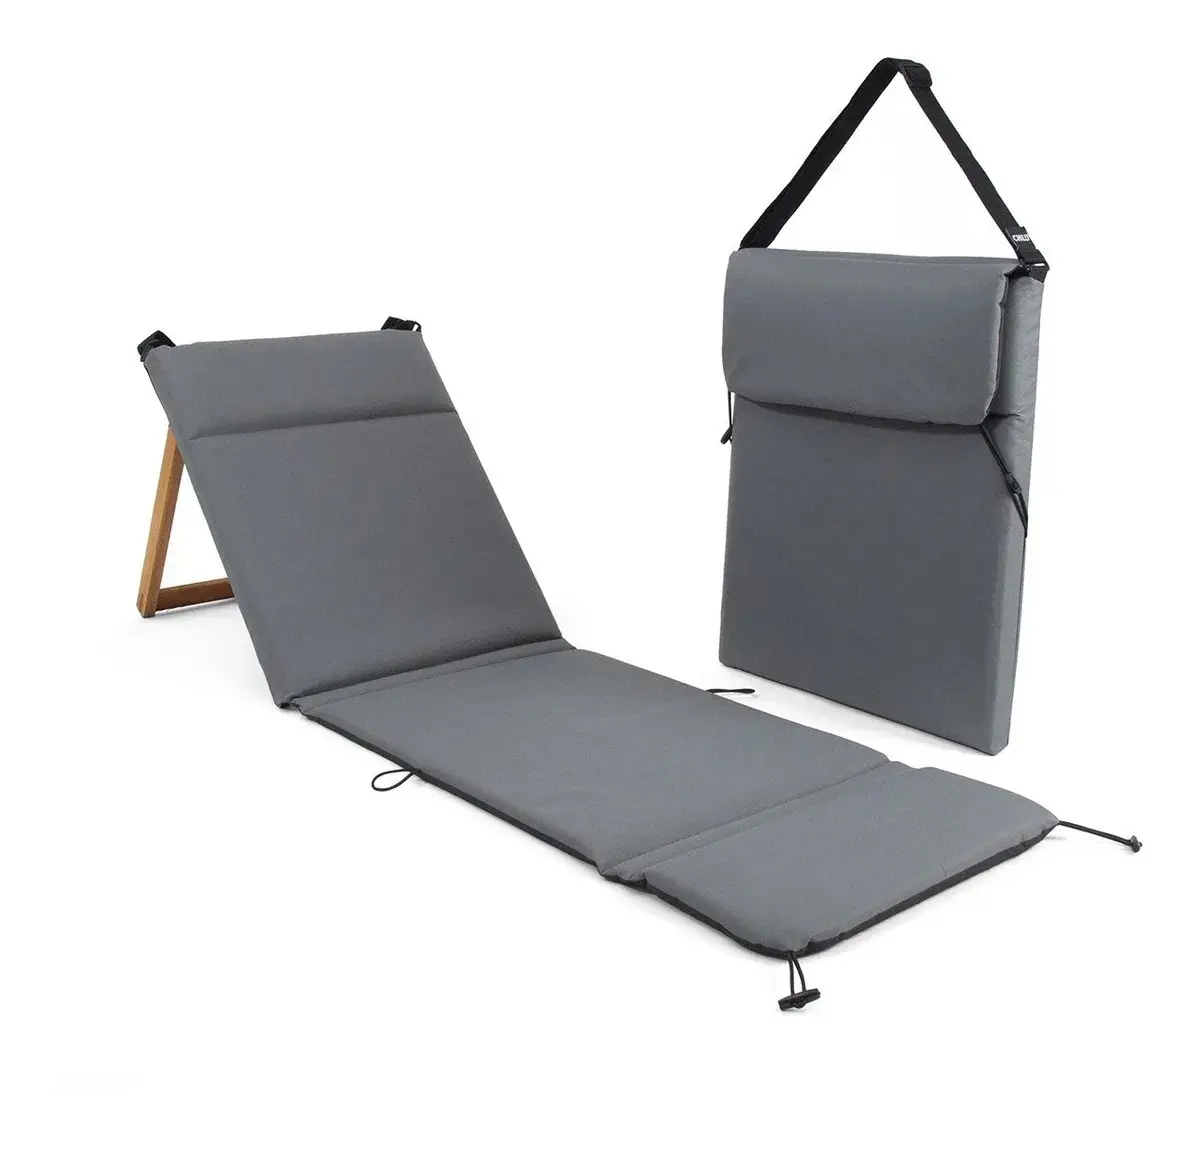 كرسي خشبي للشاطئ قابل للتعديل منخفض الوزن حصيرة من الفوم تصميم جديد كرسي استرخاء محمول للشاطئ قابل للطي في الهواء الطلق